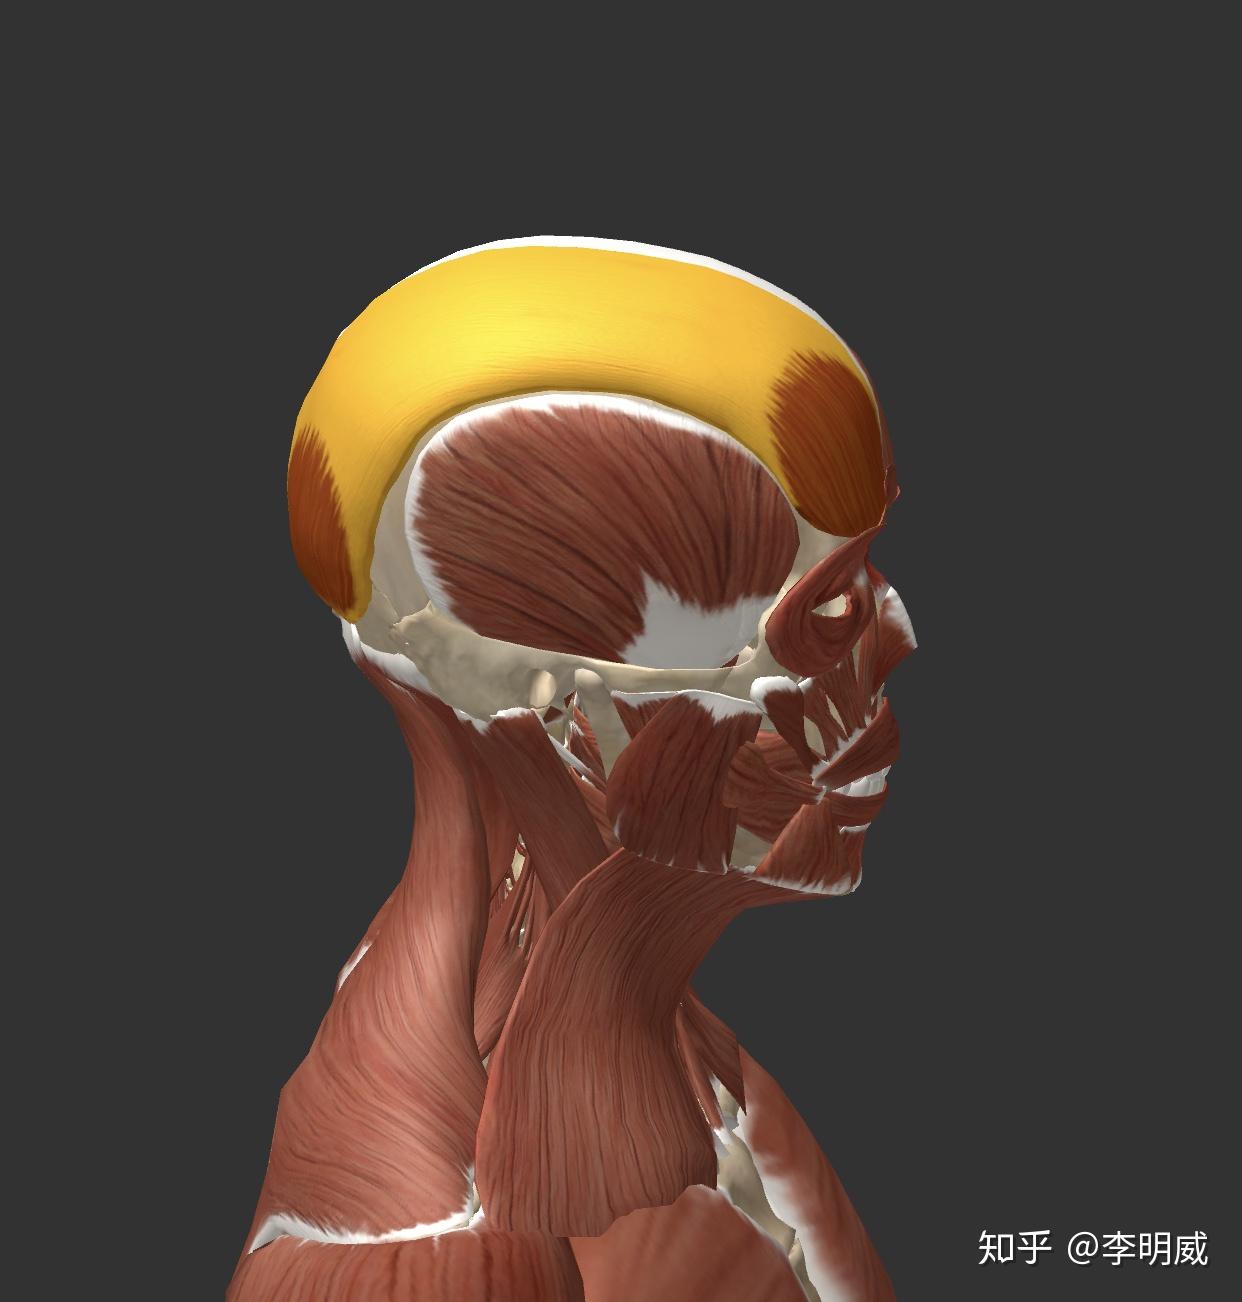 我们来看下方图片,从前额到后脑勺,有额肌,帽状腱膜(黄颜色部分),枕肌